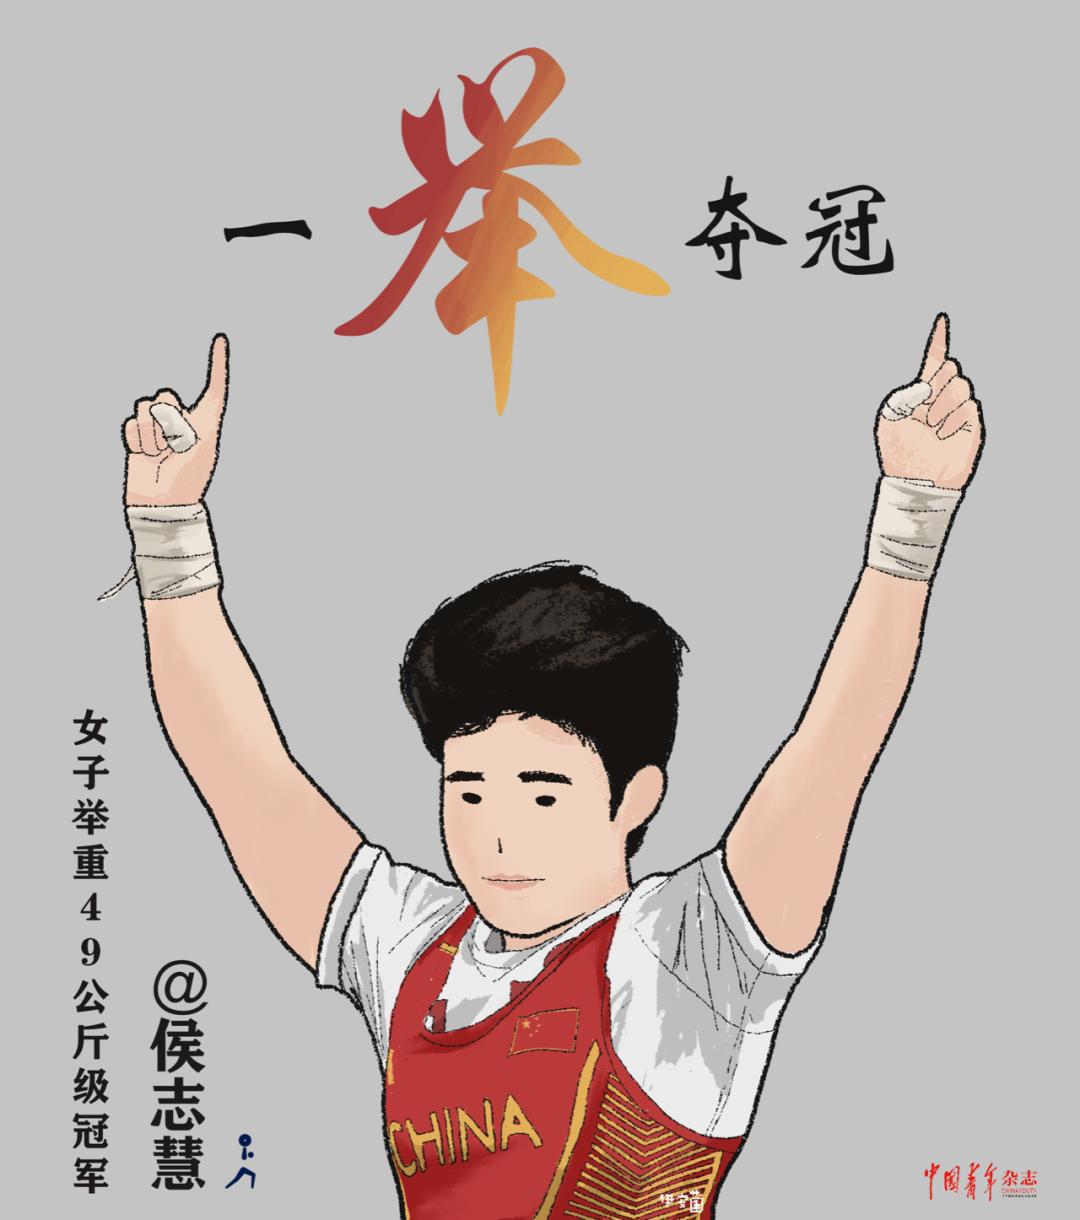 手绘中国运动员奥运夺金时刻